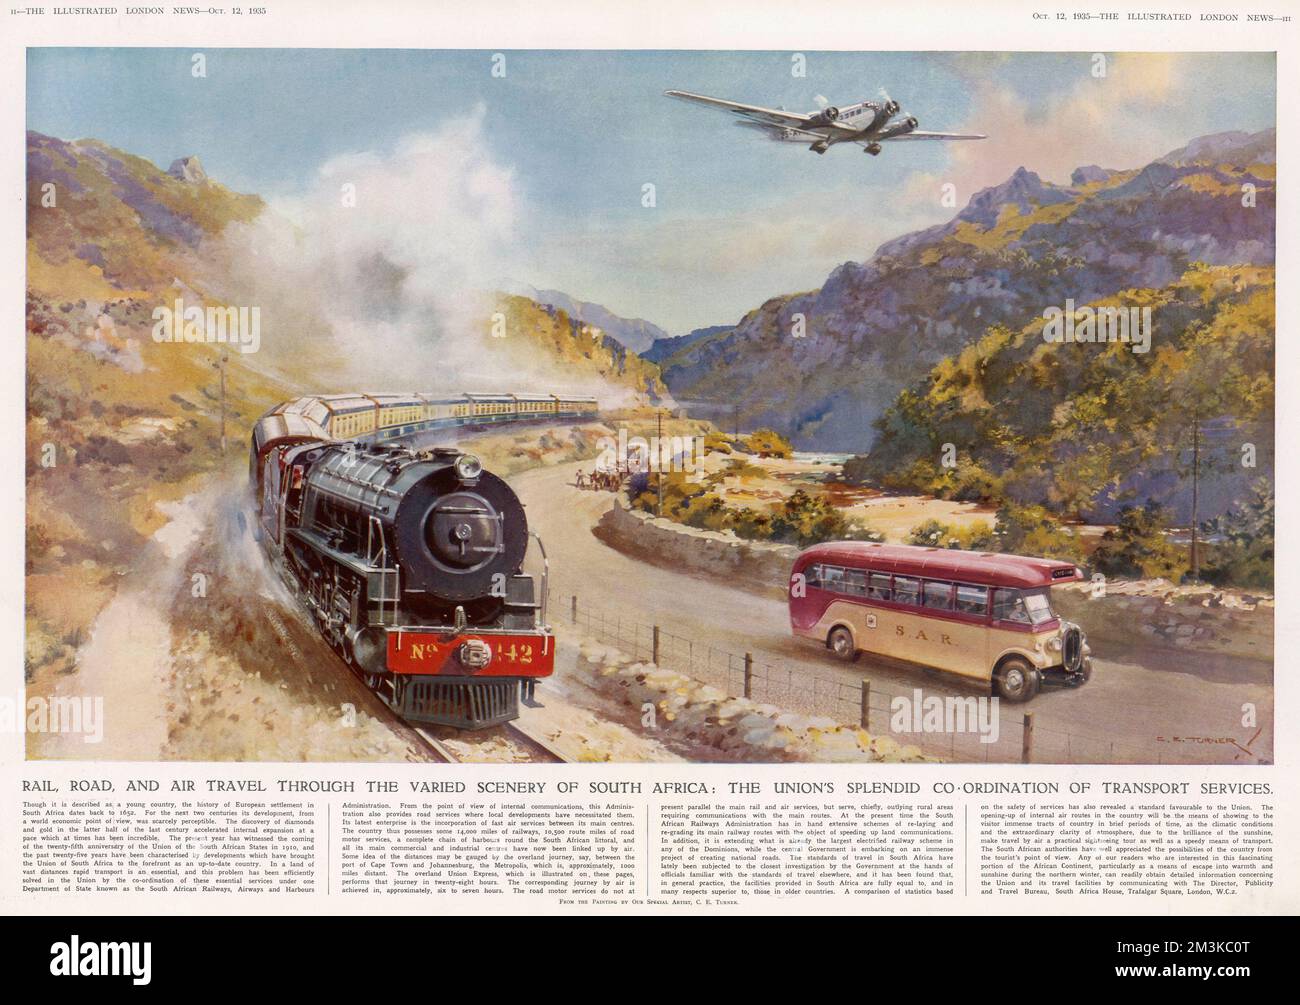 Die Koordinierung der Verkehrsdienste in Südafrika - Eisenbahn-, Straßen- und Luftverkehr. Ein Bild, das die Infrastrukturfortschritte der Union der südafrikanischen Staaten priesst. Datum: 1935 Stockfoto